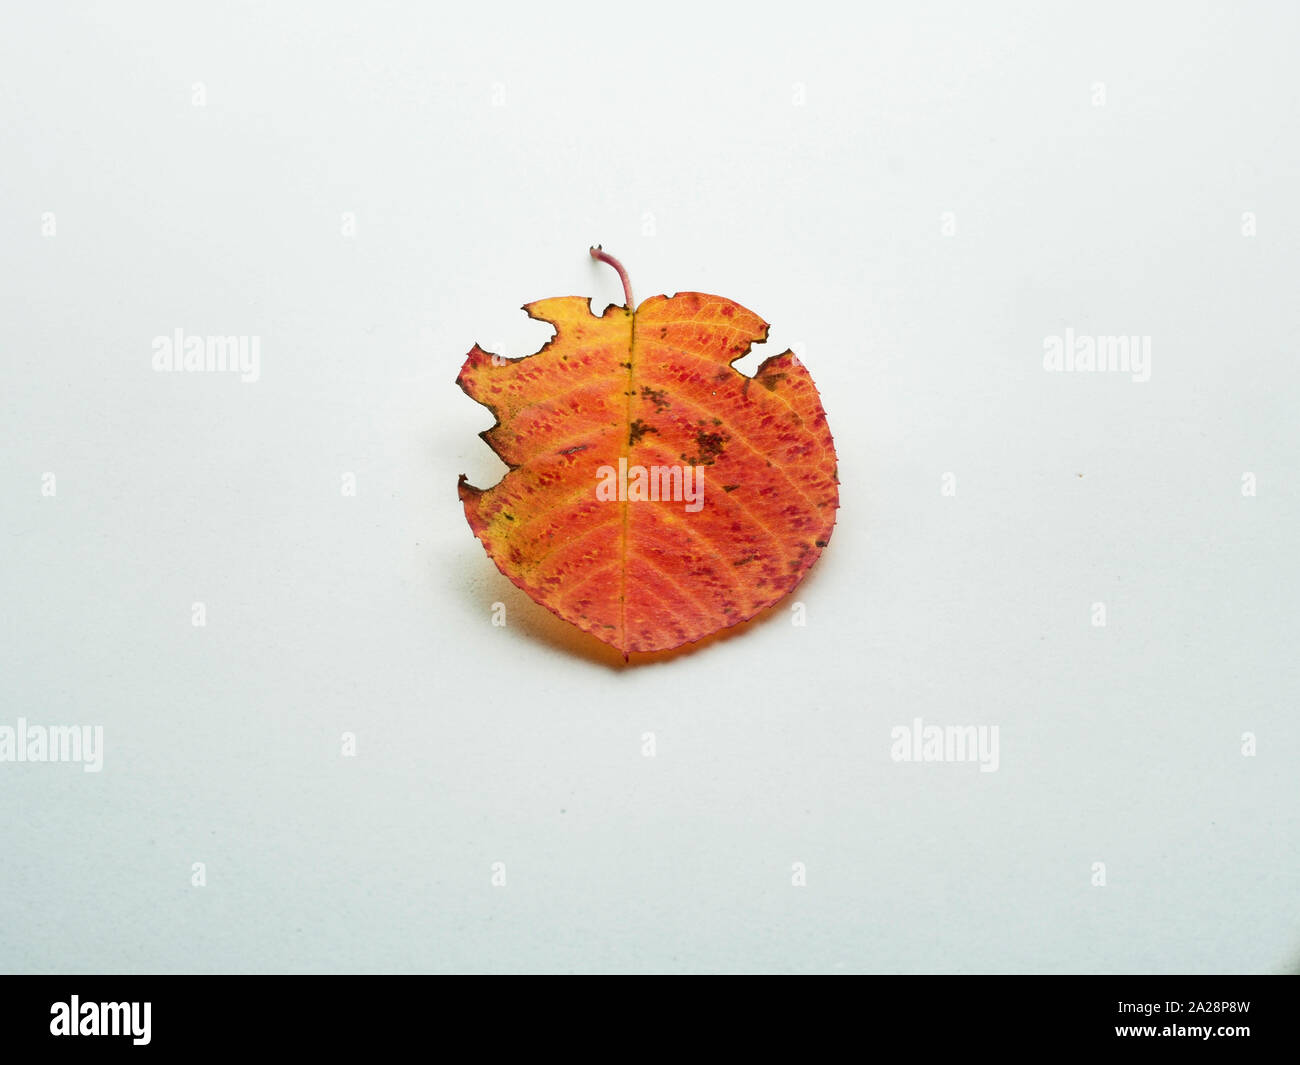 Des feuilles d'automne tombées. shadberry Feuillage de l'automne. Jaune, rouge, marron. Photo sur fond blanc. Banque D'Images